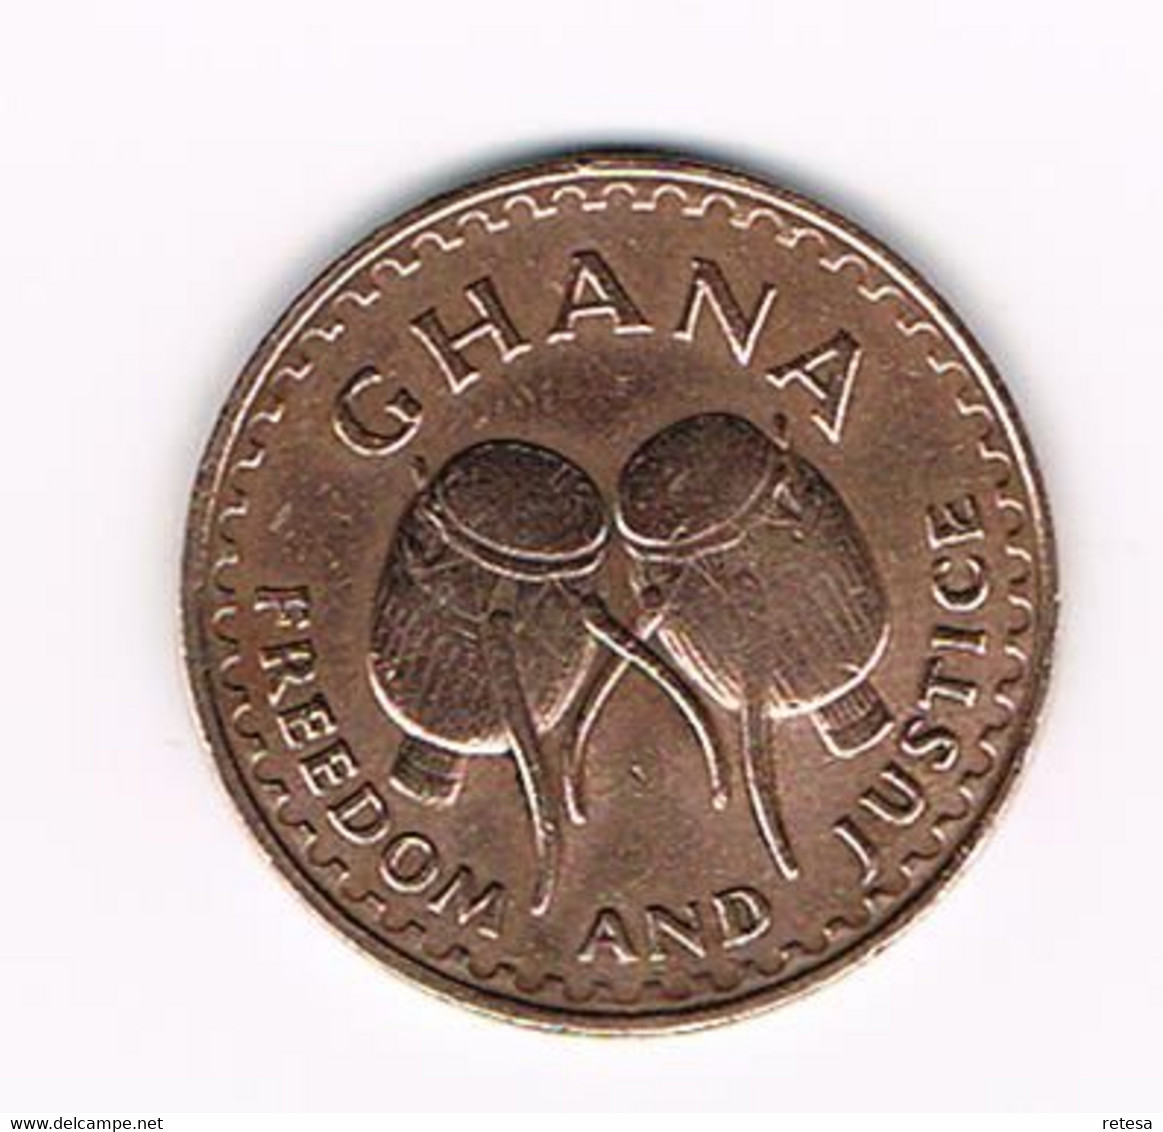 # GHANA  1 PESEWA  1967 - Ghana